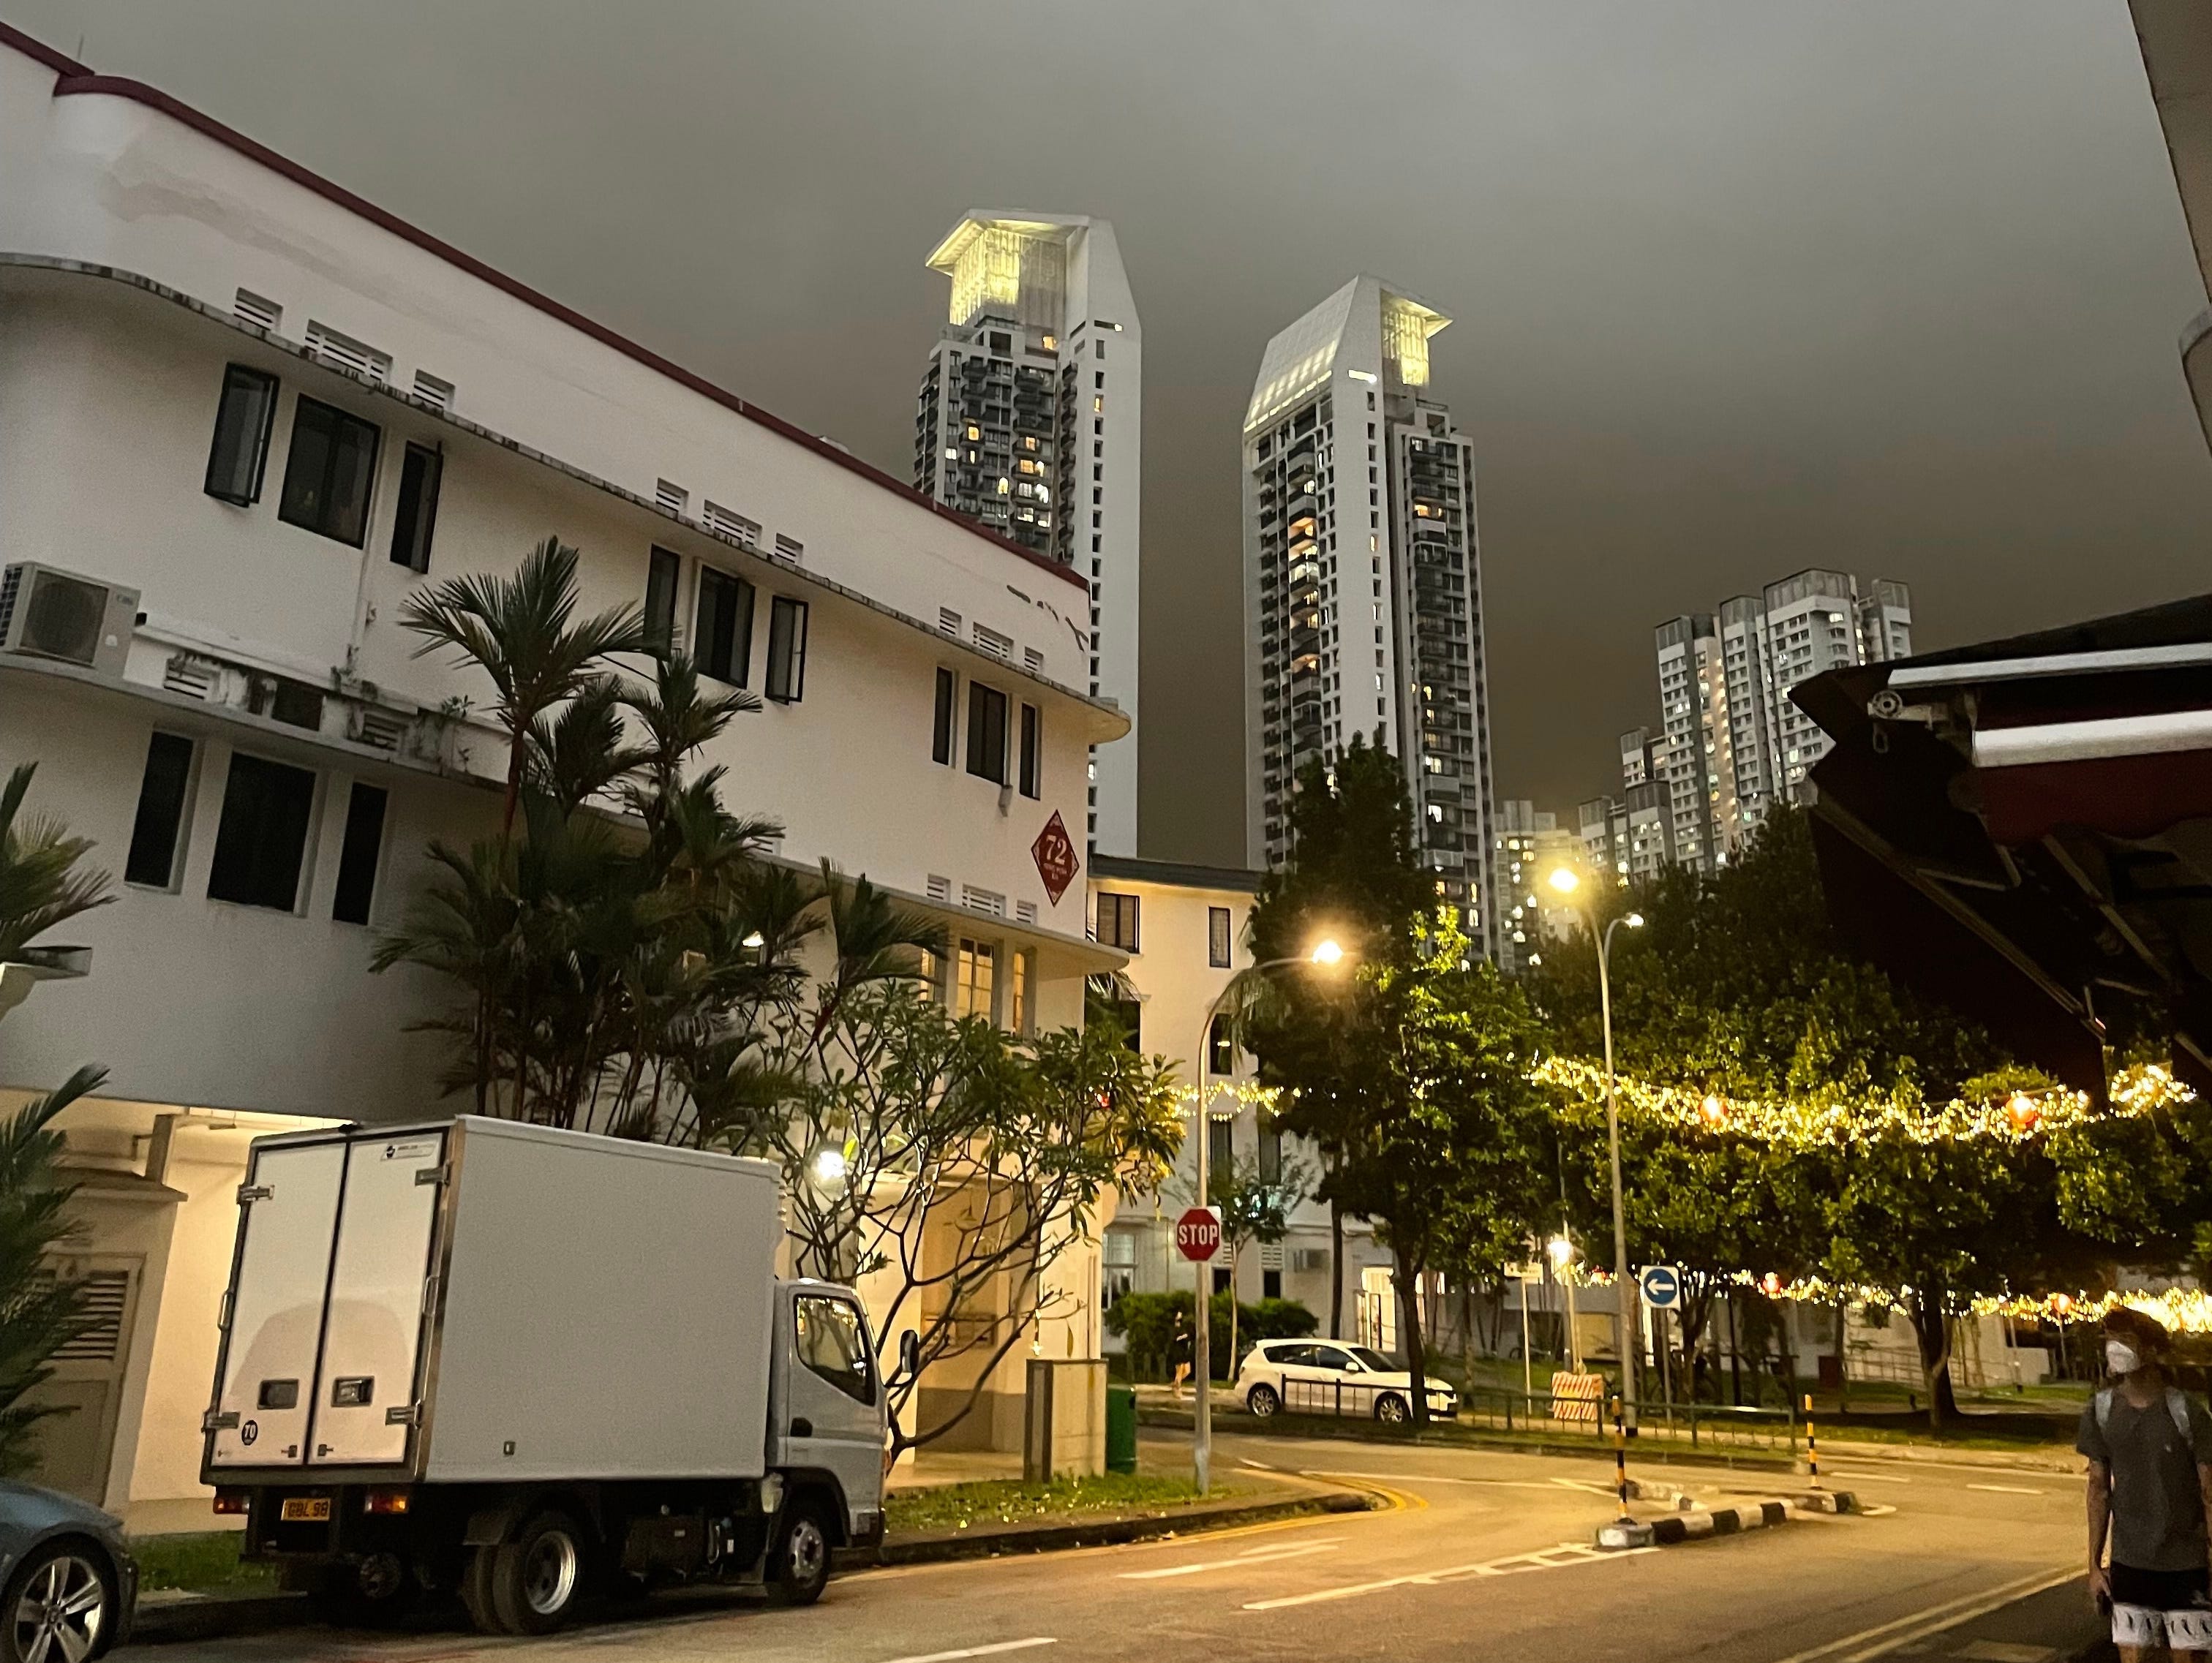 Eine stürmische Nacht in Singapur mit Hochhäusern in der Ferne und einer leeren Straße